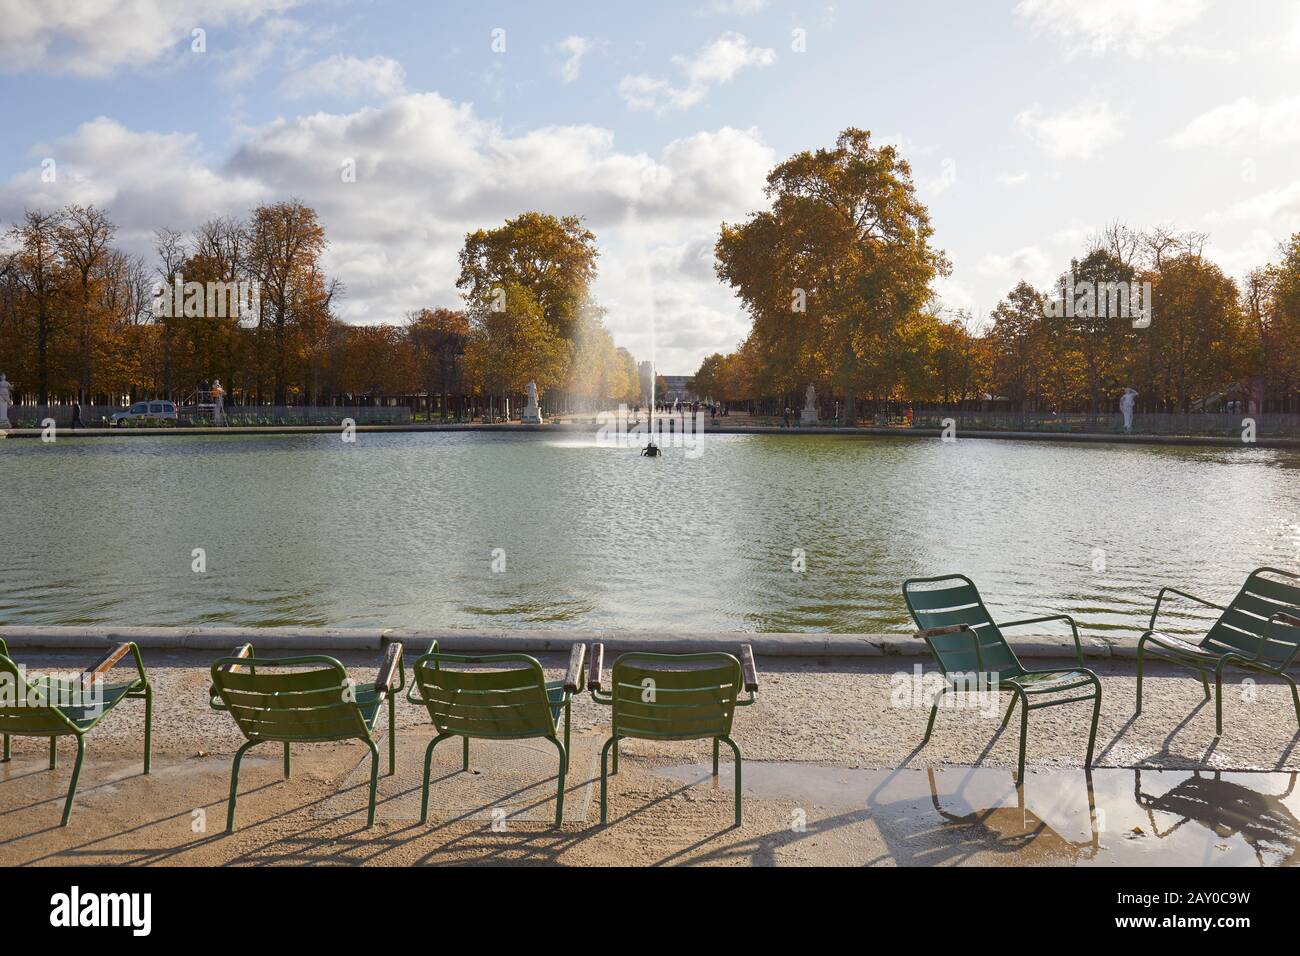 Paris - 7. NOVEMBER 2019: Tuileries Garten mit grünen Stühlen und Springbrunnen, sonniger Herbst in Paris Stockfoto